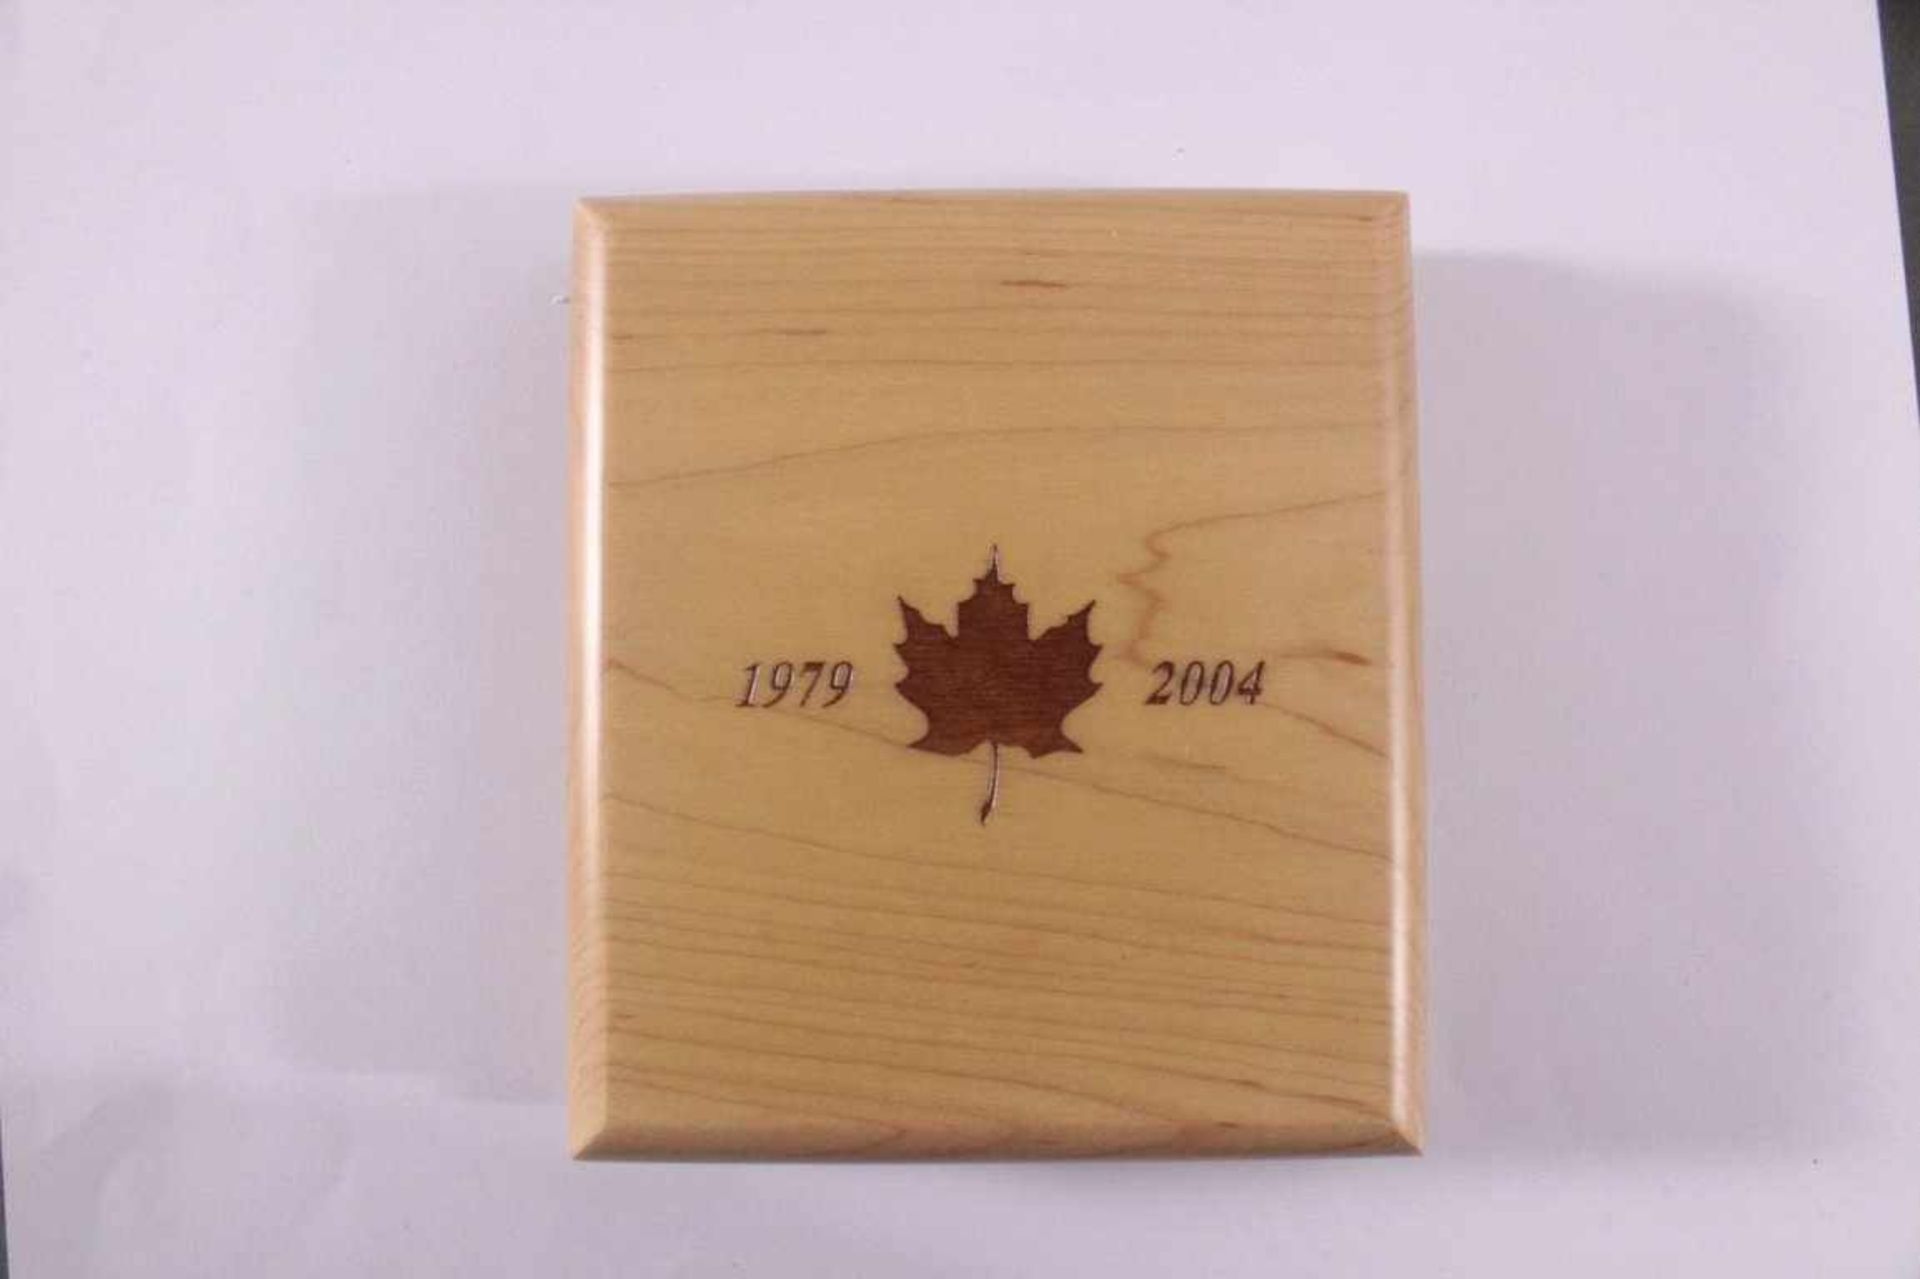 1 oz Maple Leaf Goldmünze50 kanadische Dollar, koloriert und mit einem Diamantenbesetzt. Inklusive - Image 4 of 4